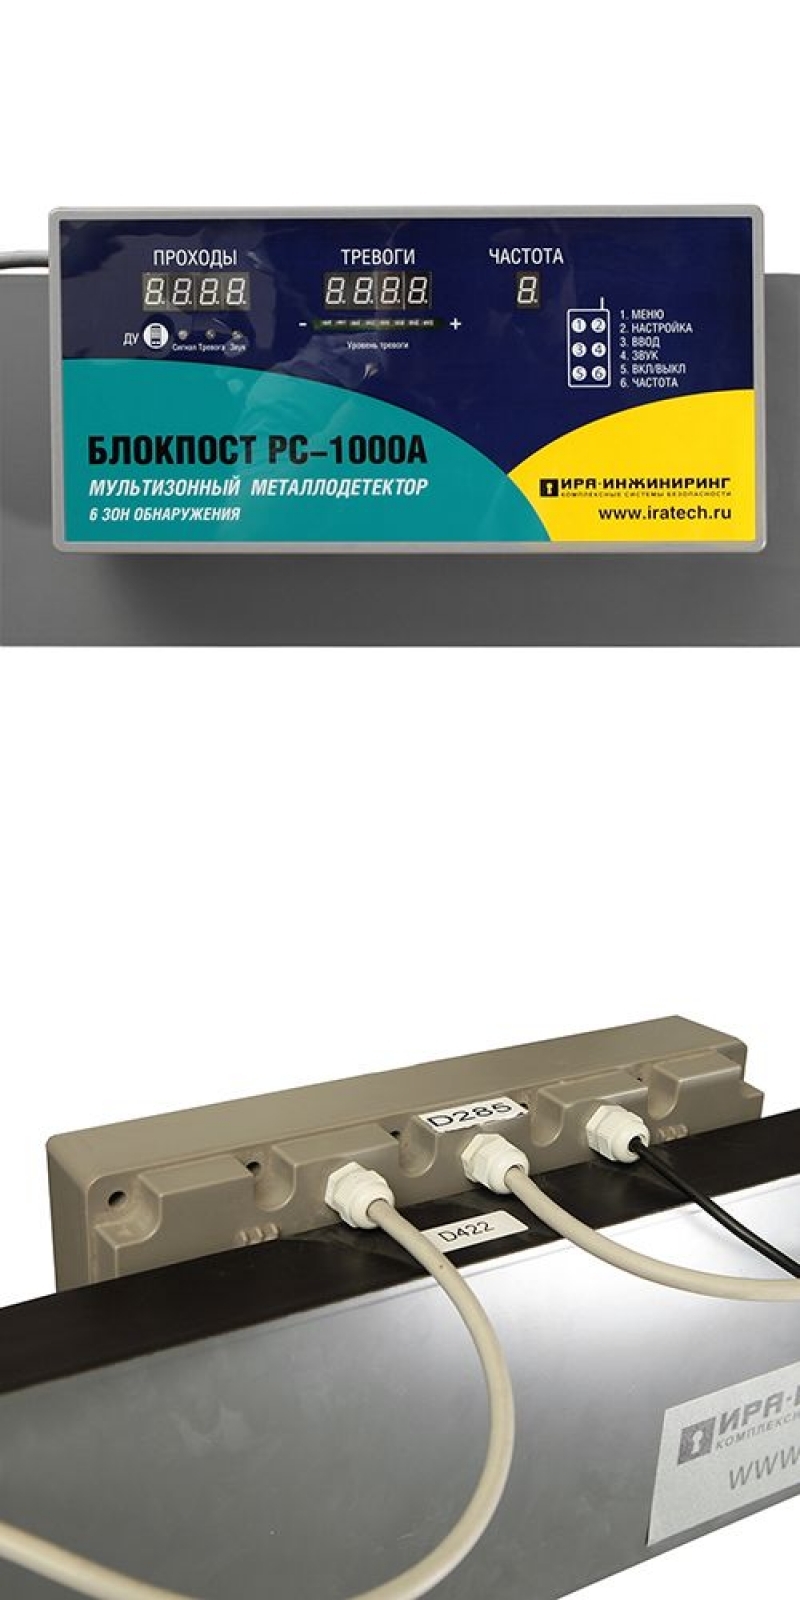 арочный металлодетектор блокпост рс-1000а